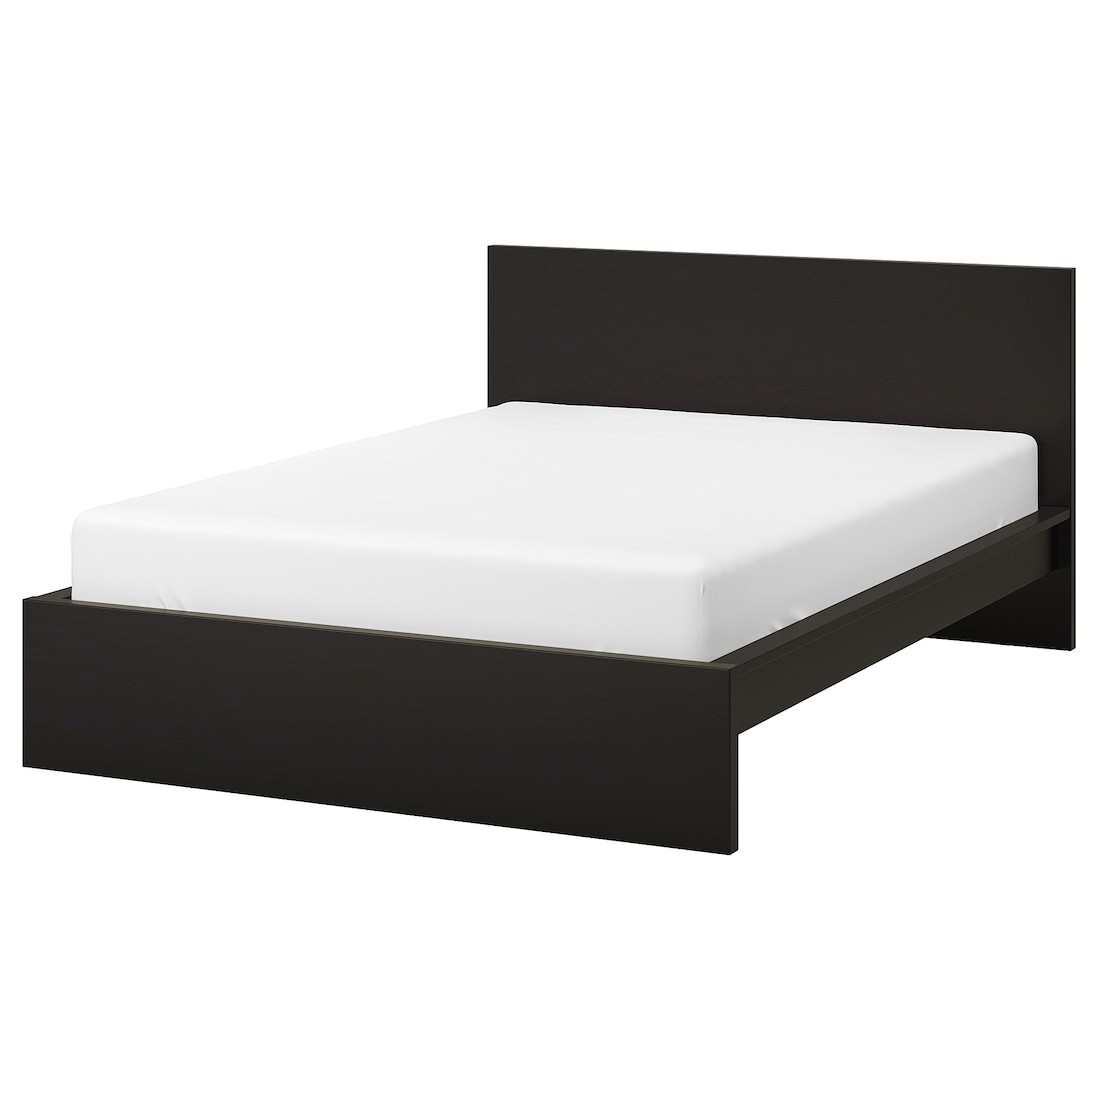 IKEA MALM МАЛЬМ Кровать двуспальная, высокий, черно-коричневый / Leirsund, 140x200 см 19019839 190.198.39